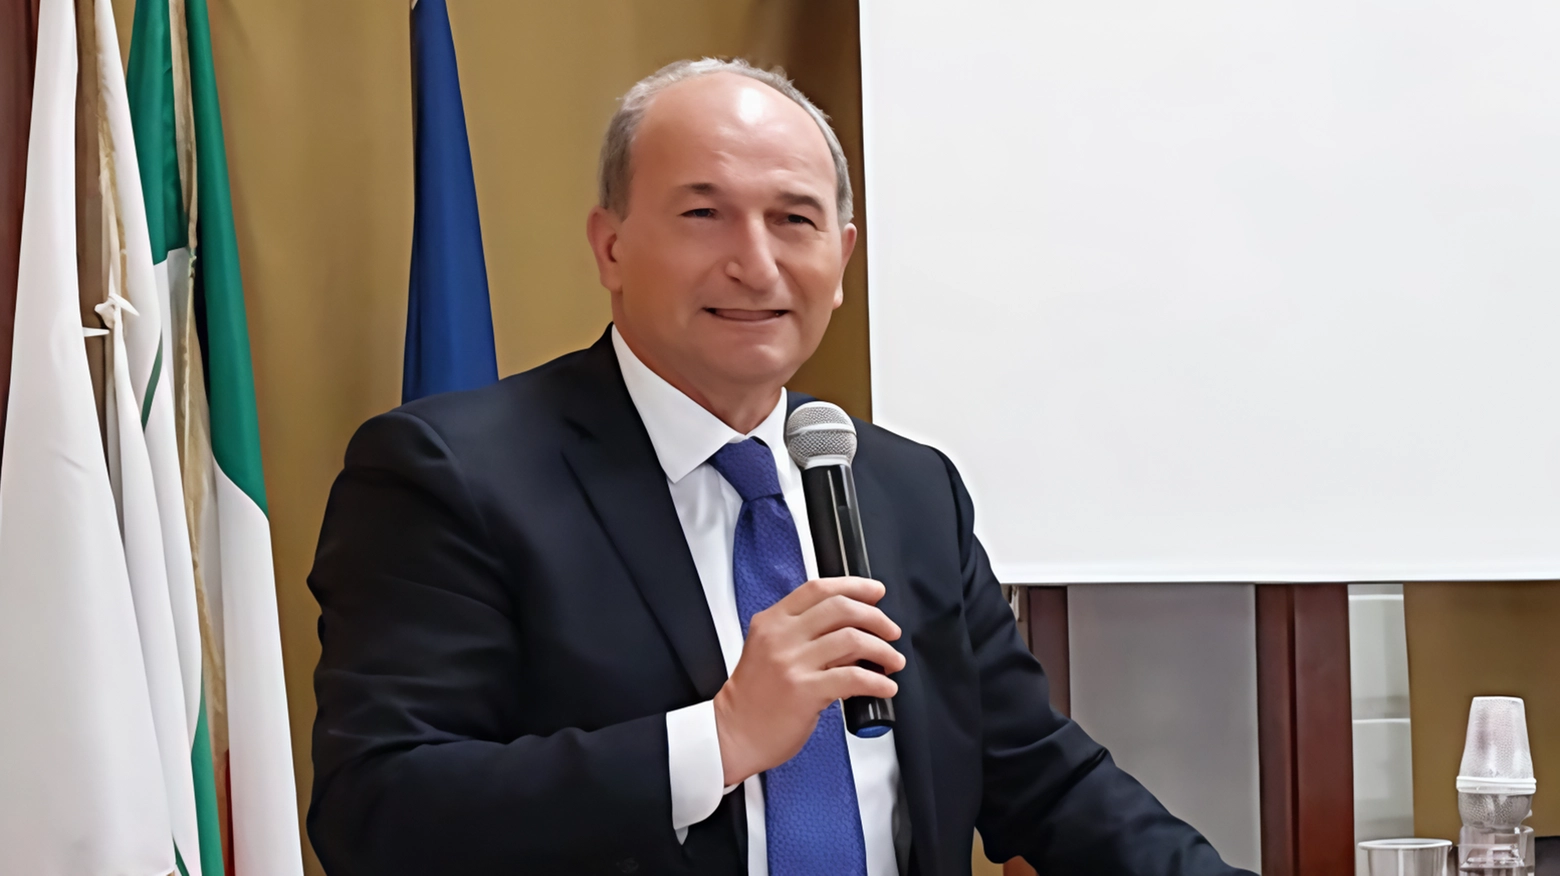 Davide Nardini lascia la presidenza di Asp del Delta Ferrarese dopo cinque anni. Lorenzo Marchesini lo sostituisce, elogiando il lavoro svolto e promettendo di continuare la crescita dell'azienda.